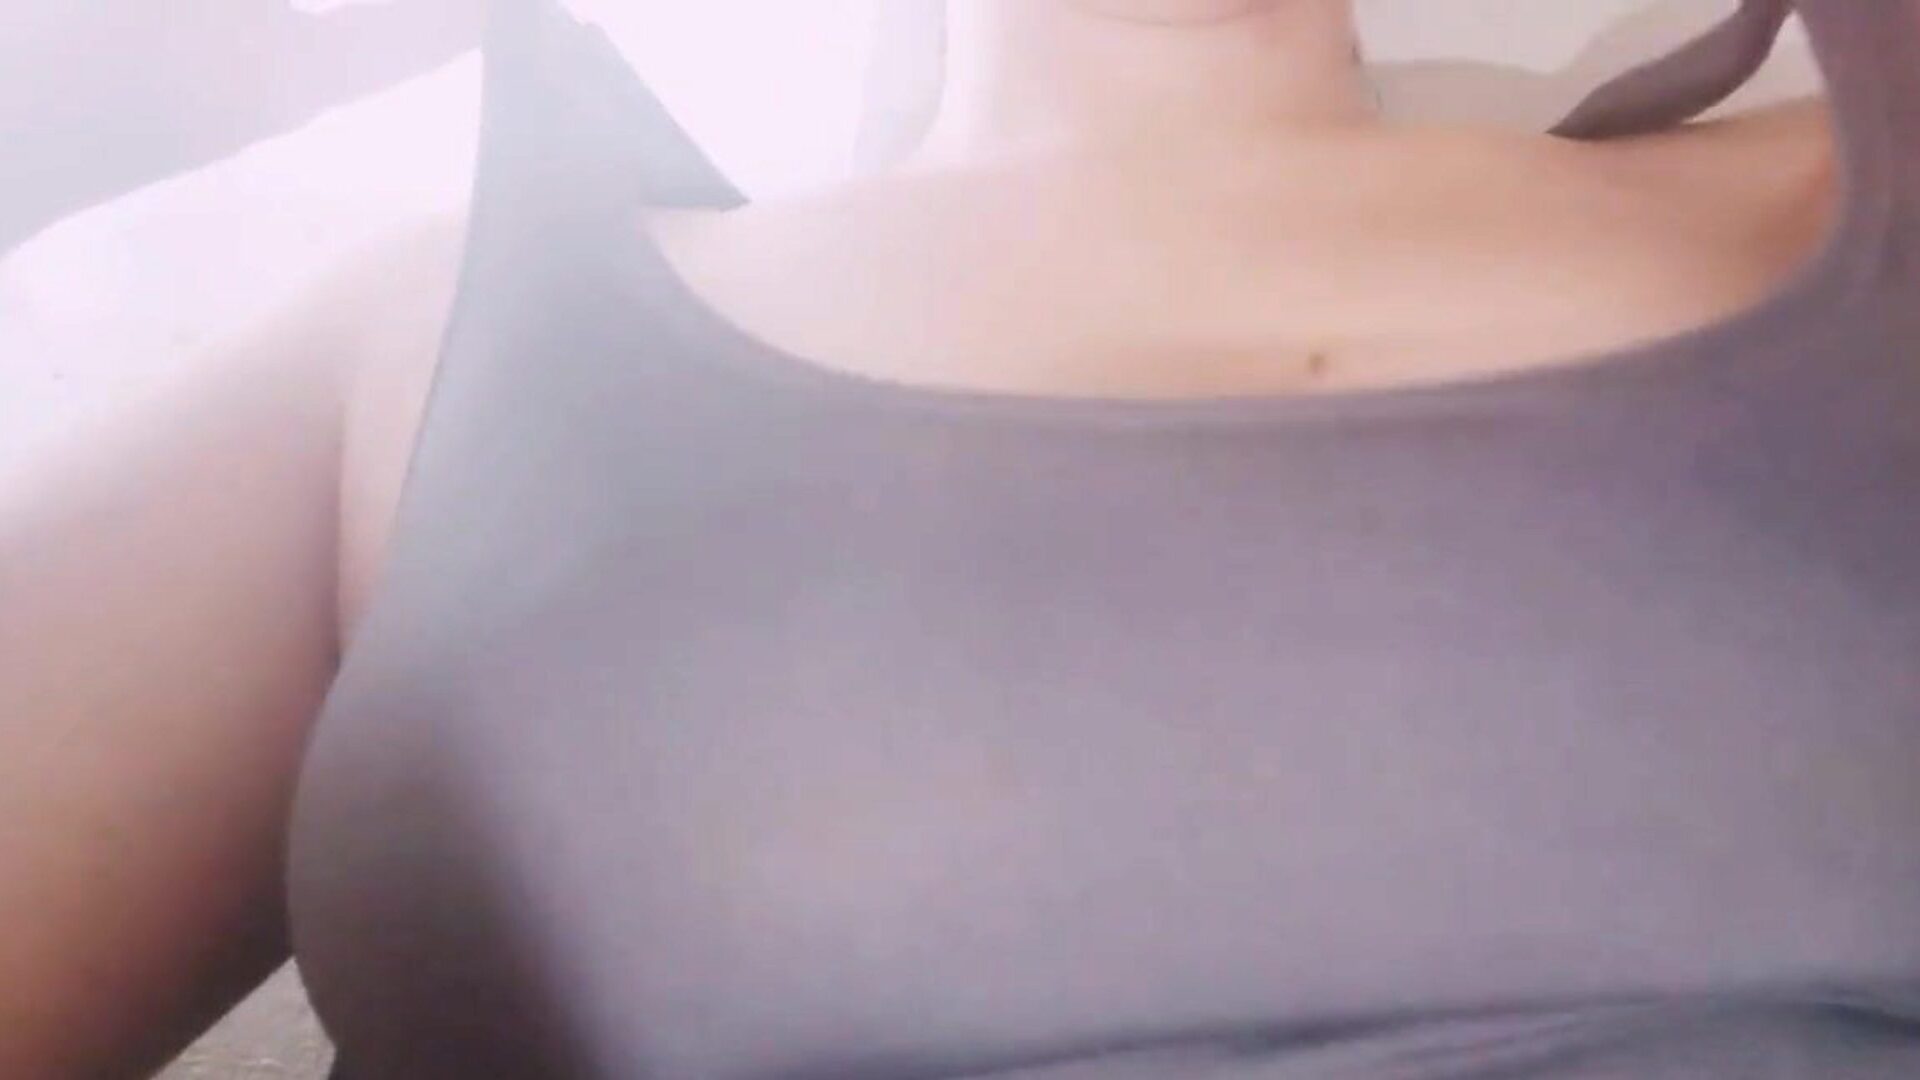 büyük göğüsler gösteren yaramaz brezilyalı kadın: bedava porno f5 izle yaramaz brezilyalı kadın xhamster'da büyük göğüsler filmini gösteriyor - her şey için ücretsiz yeni büyük göğüsler ve ücretsiz göğüsler hd porno tube kliplerinin nihai seçimi